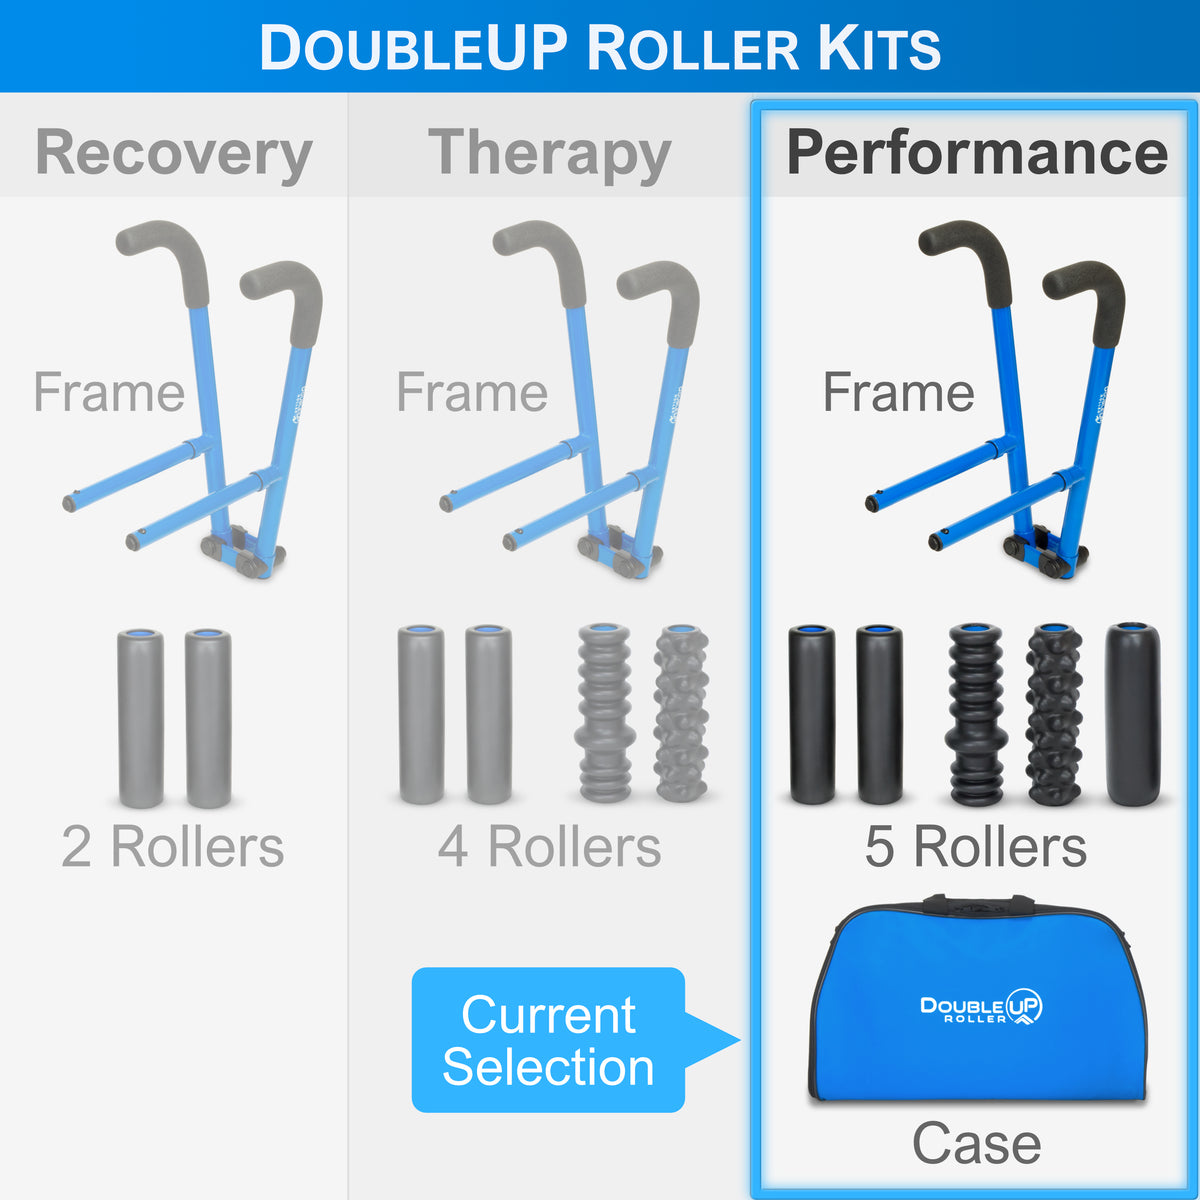 DoubleUP Roller Kit Comparison Table